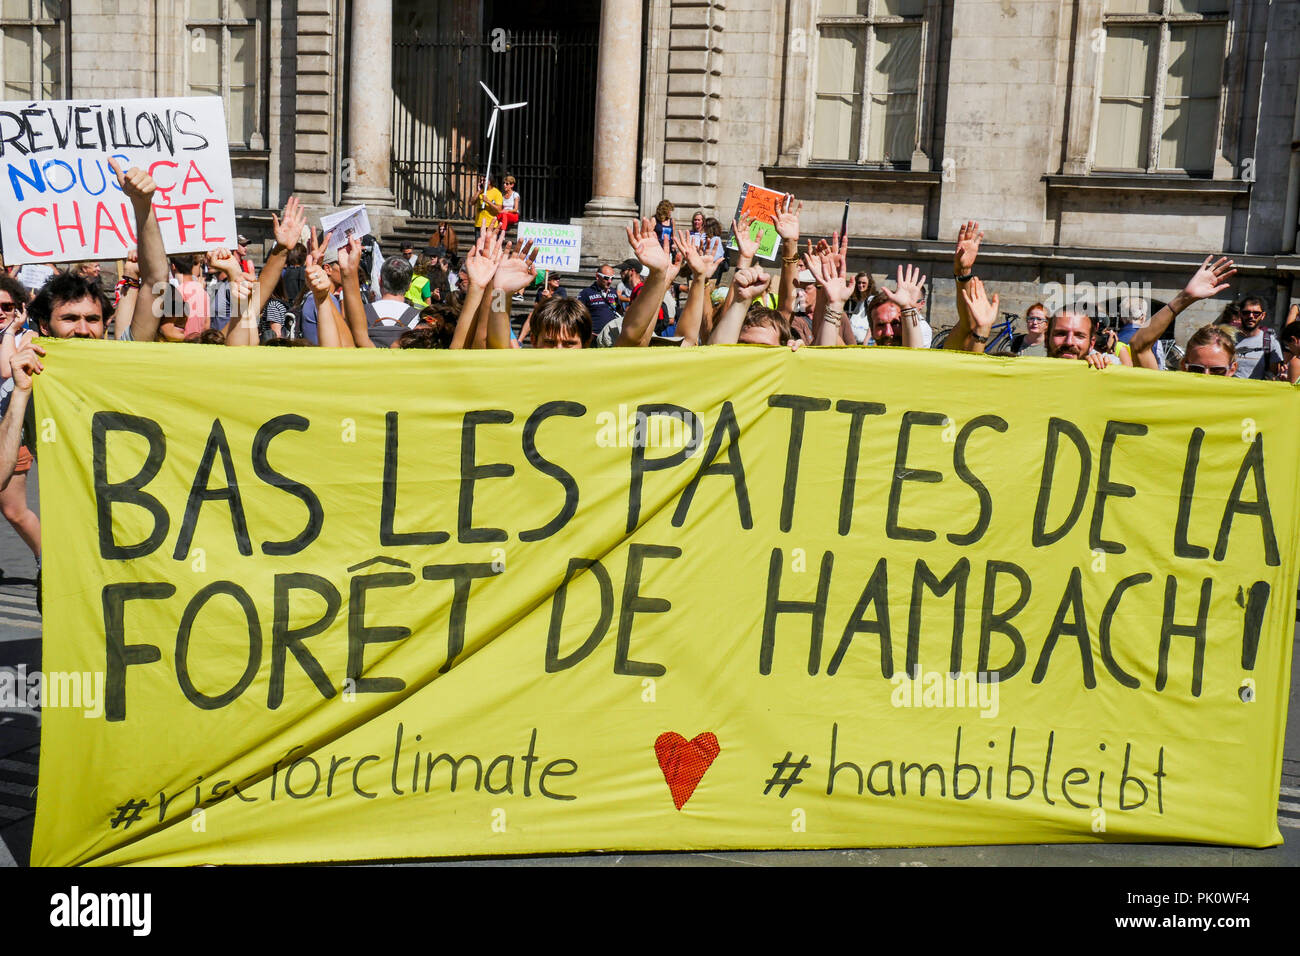 Des milliers de manifestants pour protester contre le chauffage, Lyon, France Banque D'Images